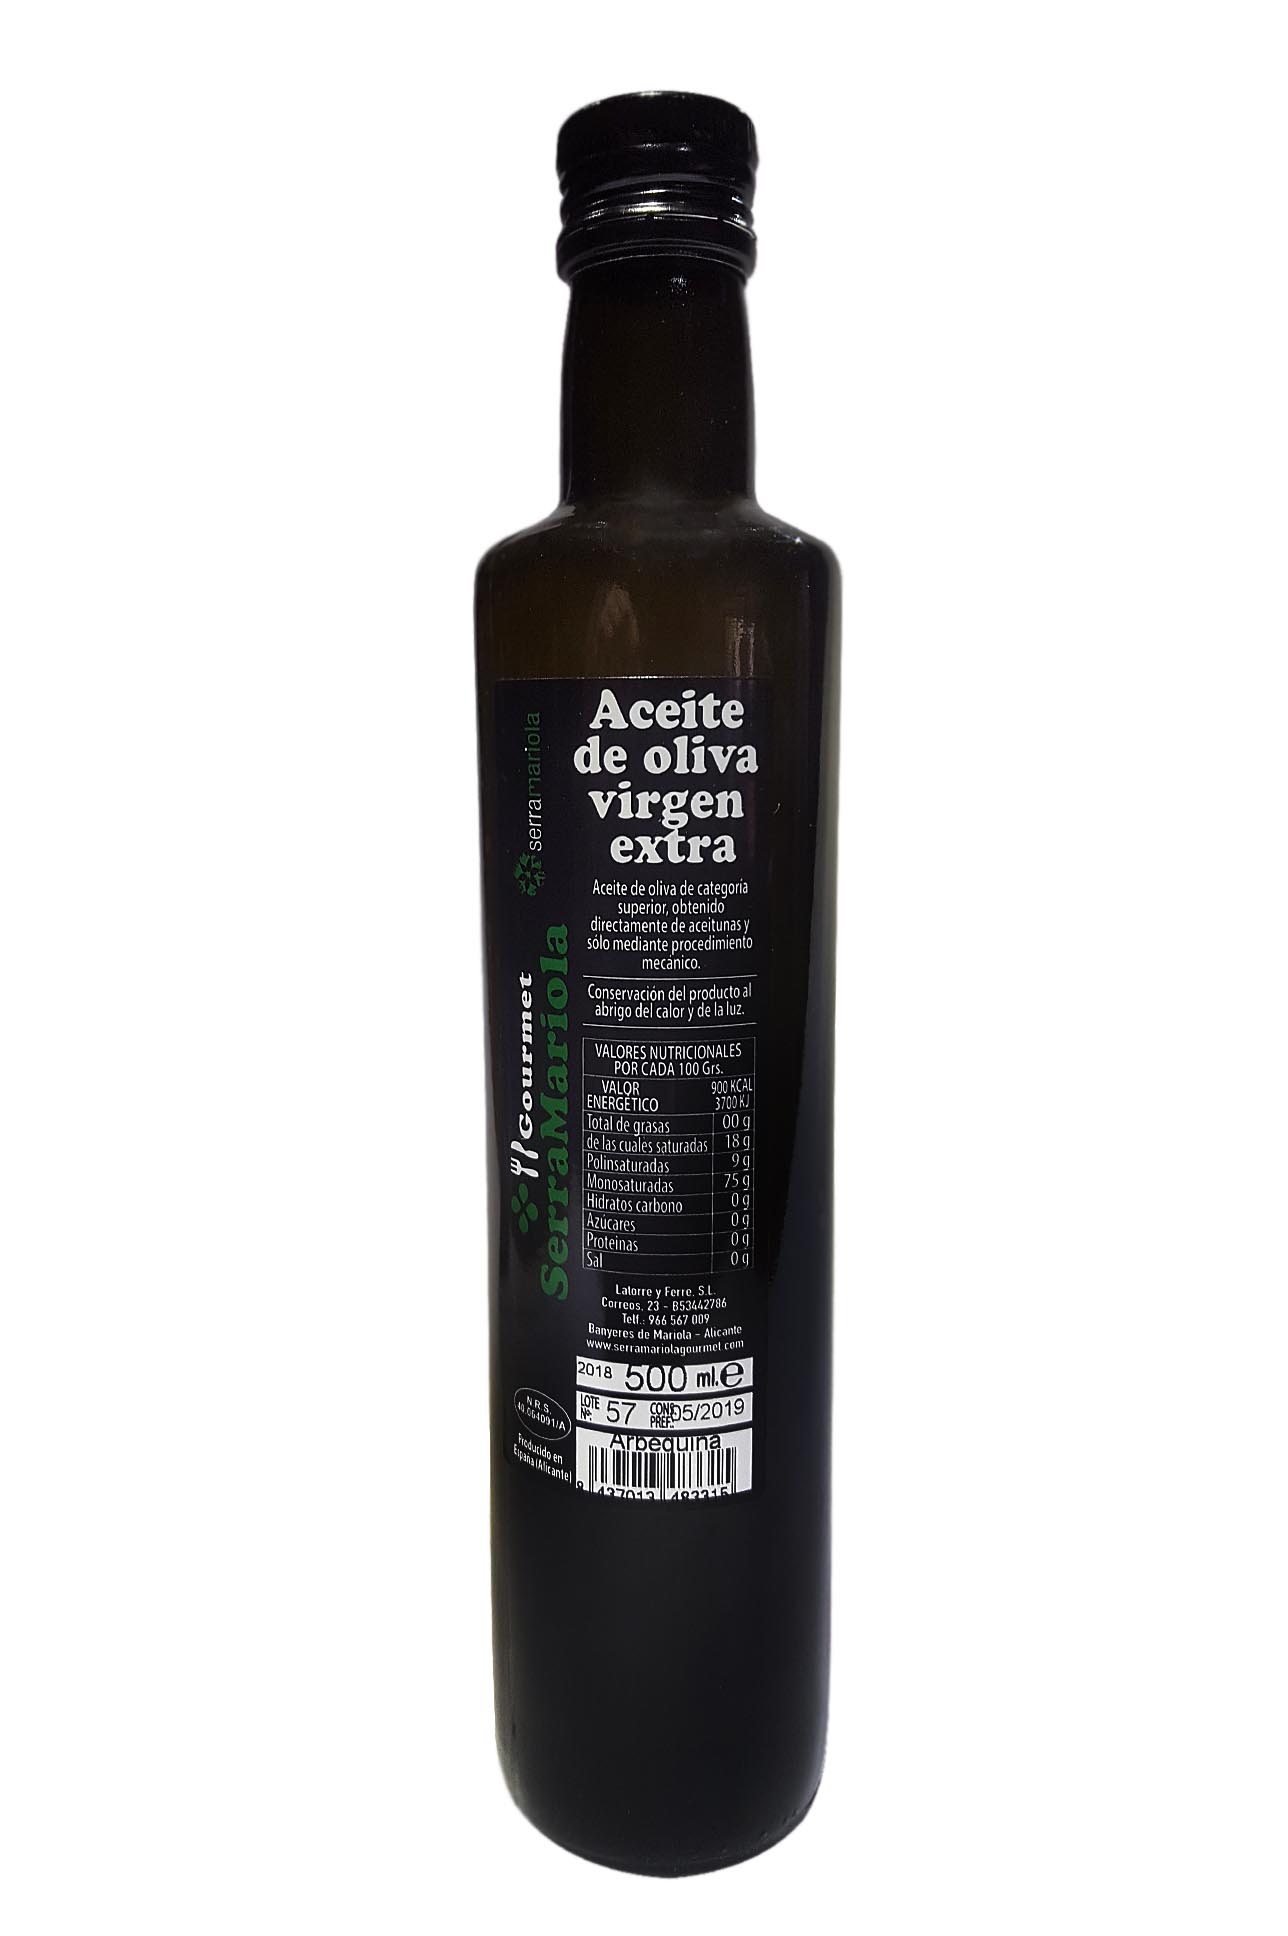 Sierra mariola olive oil